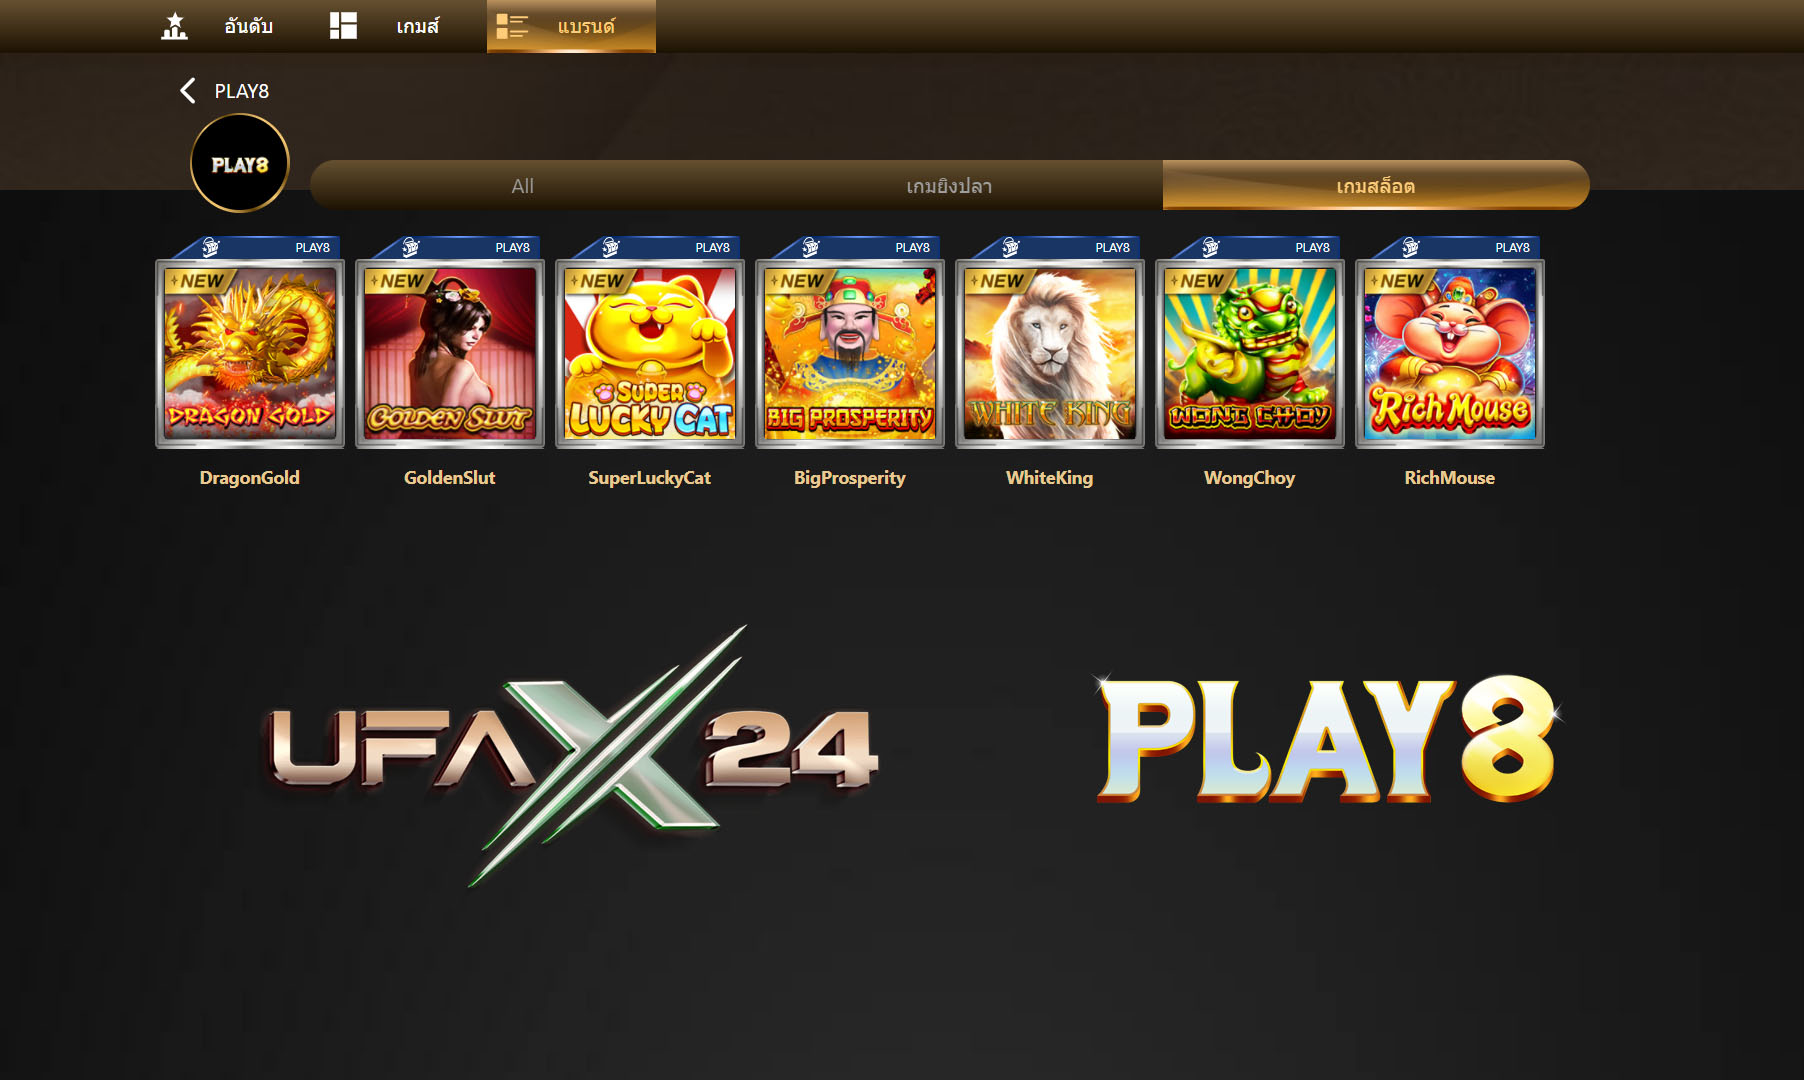 Play8 เกมสล็อตออนไลน์ ufax24 เว็บแทงบอล แทงบอลออนไลน์ ที่ดีที่สุด